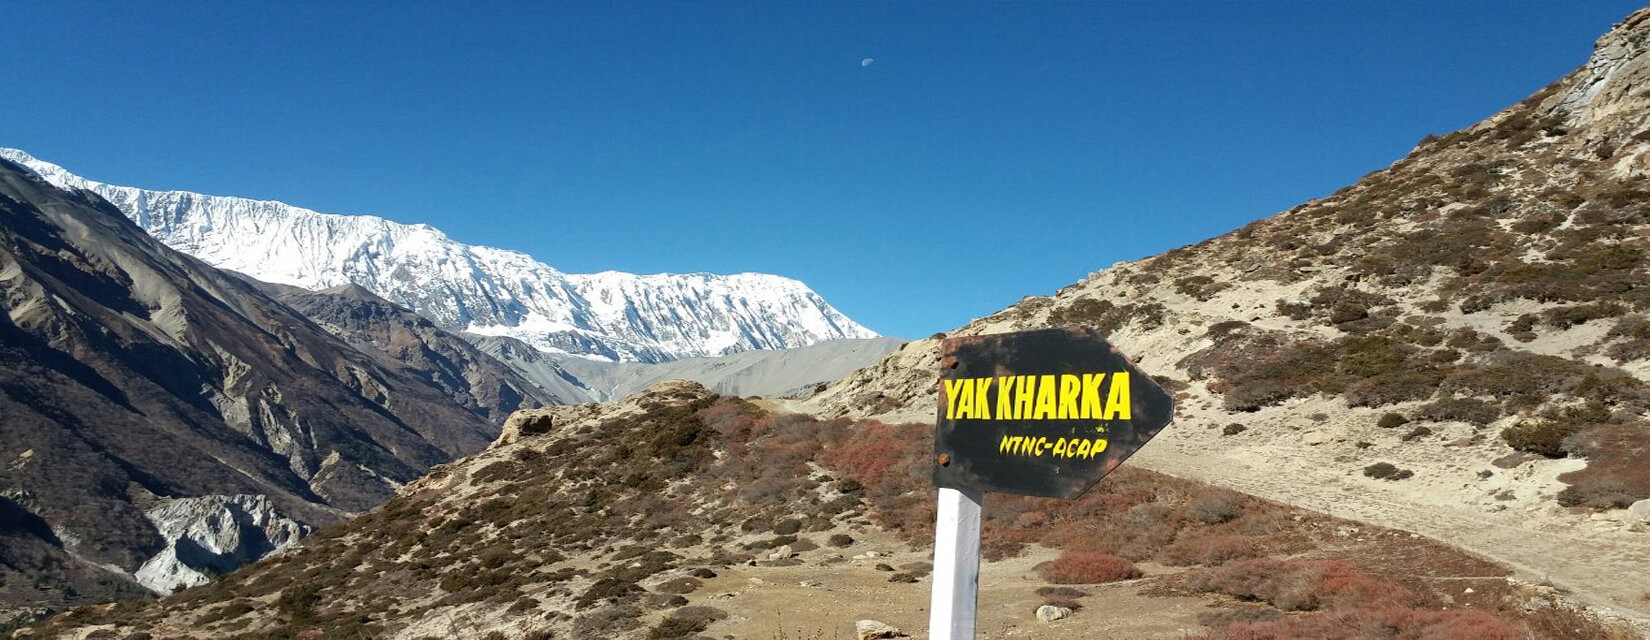 Image result for Annapurna Circuit Trek www.himalayanasiatreks.com